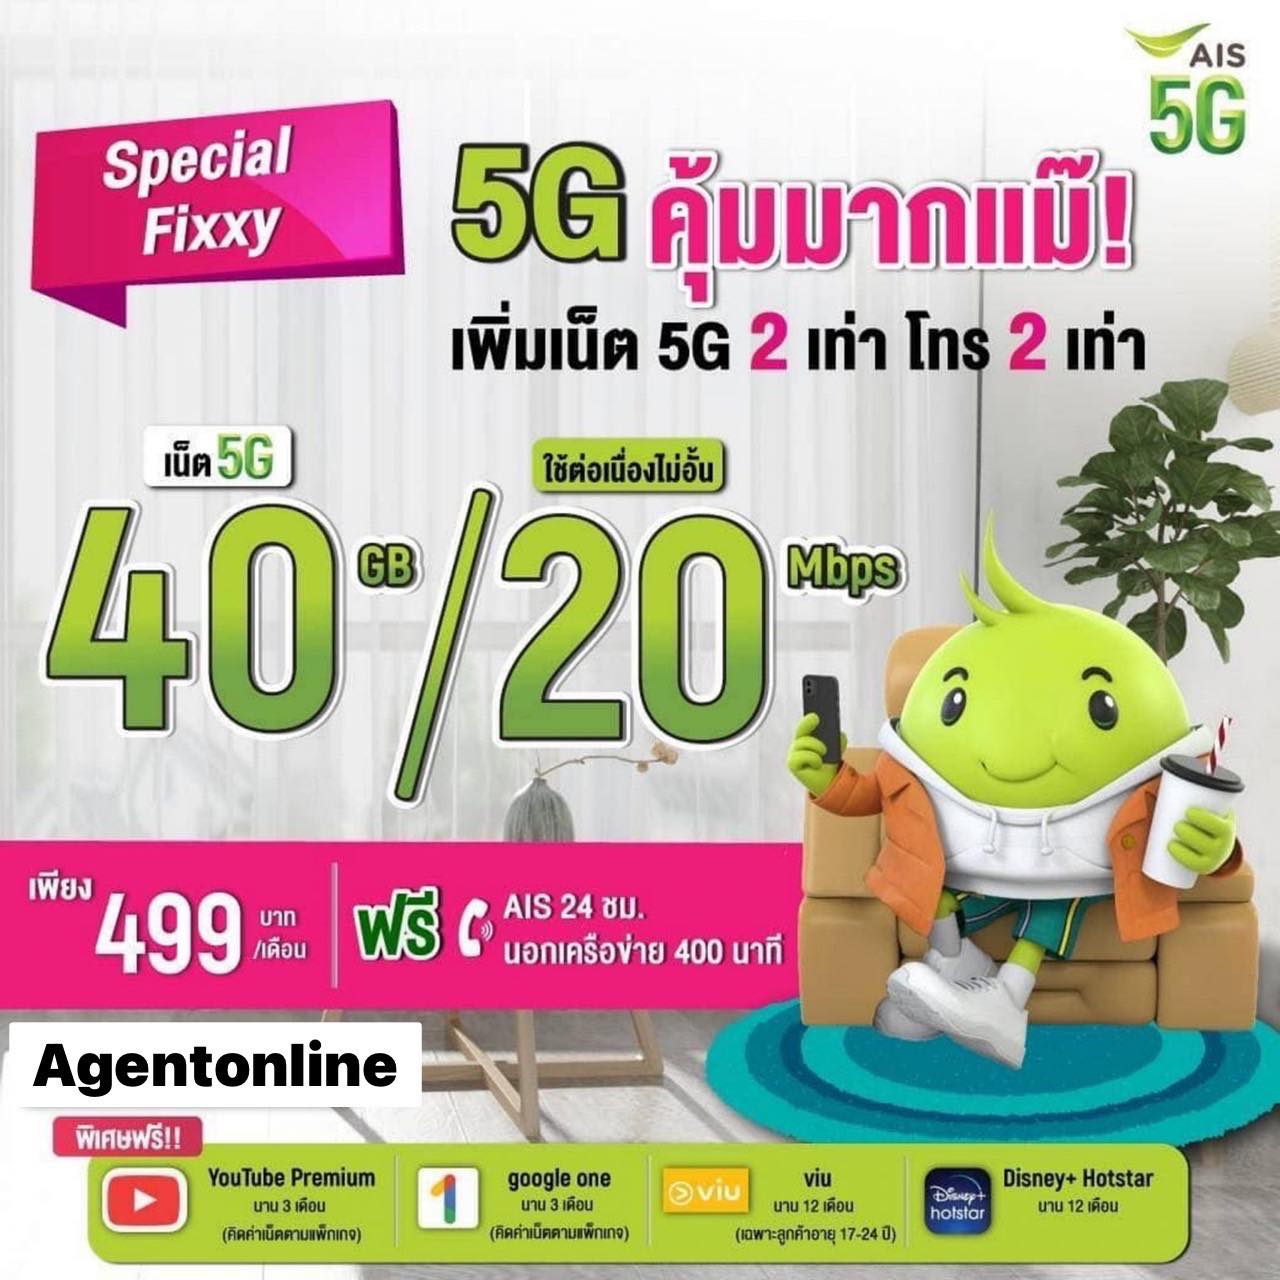 Special Fixxy 499